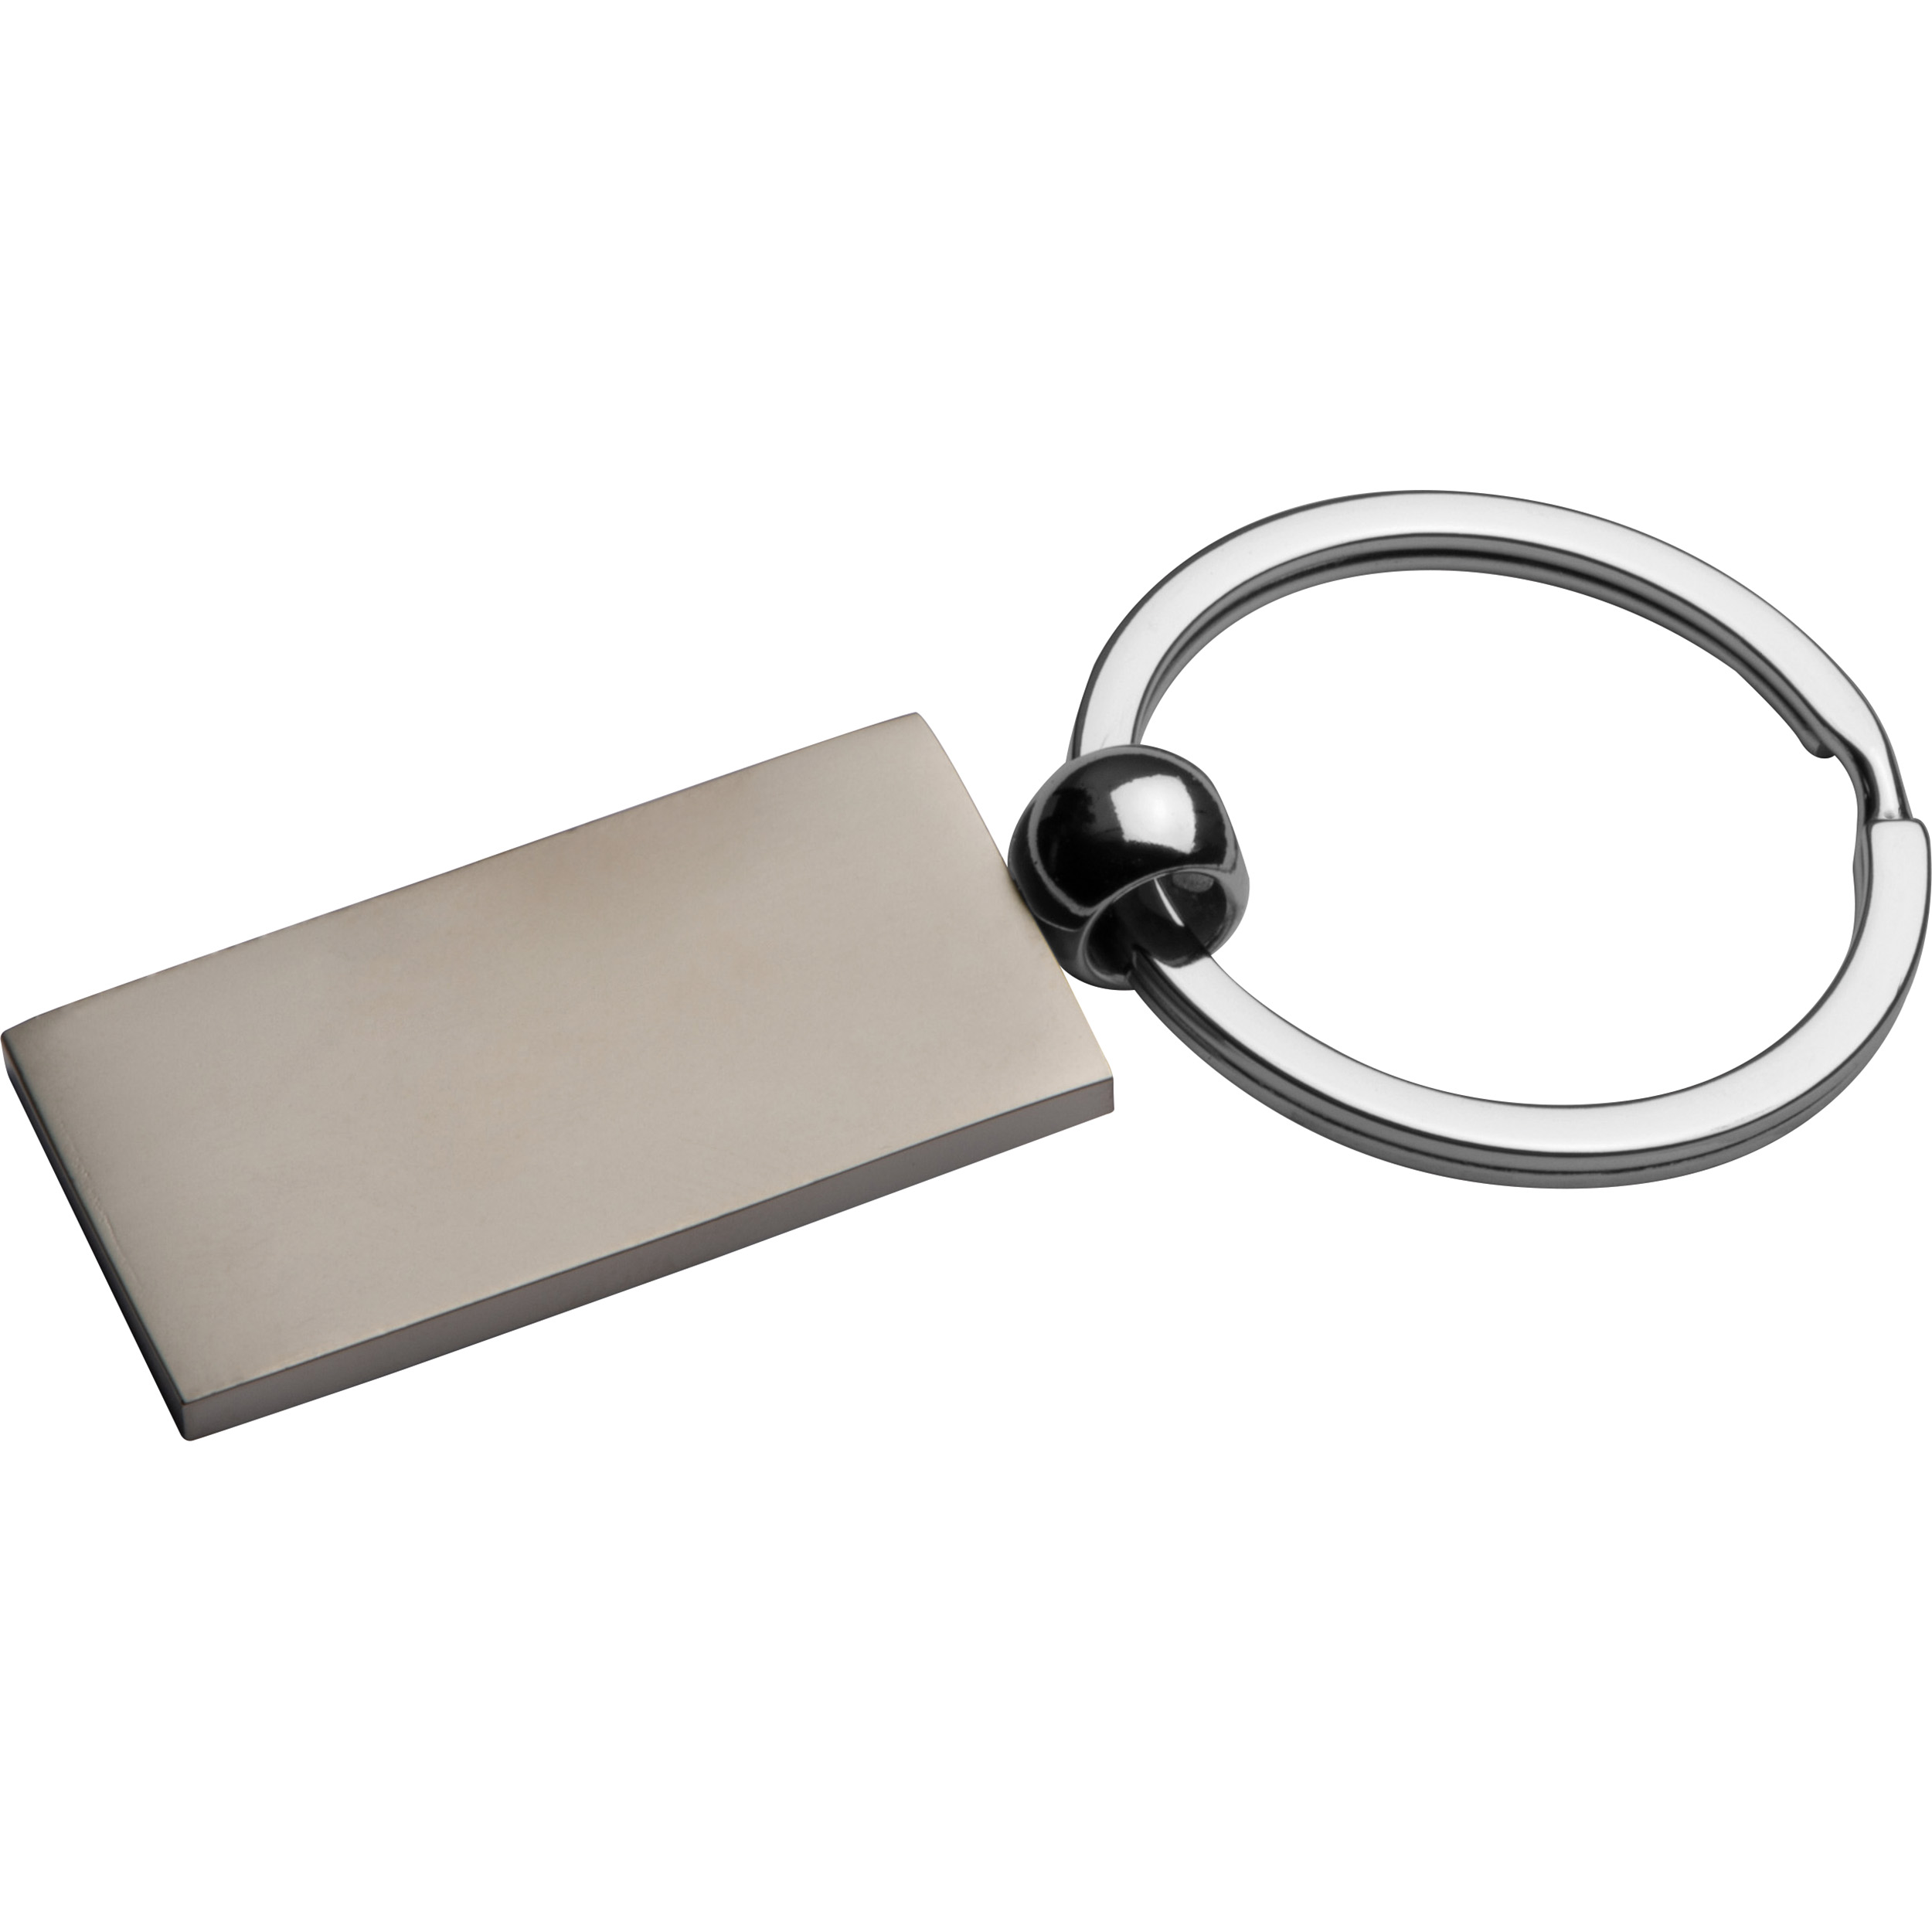 Metal keyring, rectangular